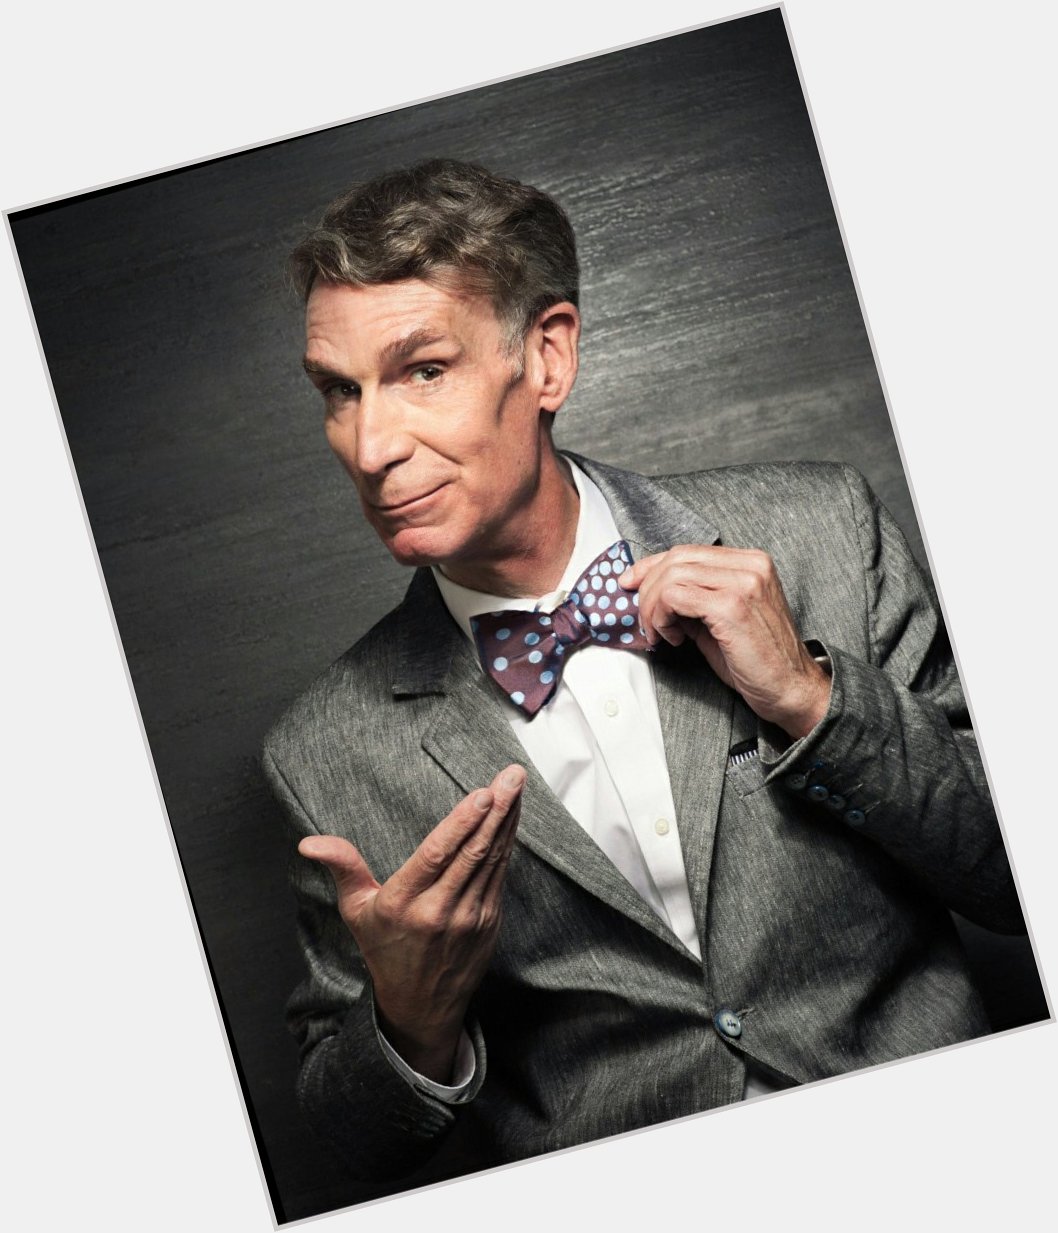 Happy Birthday to Bill Nye 